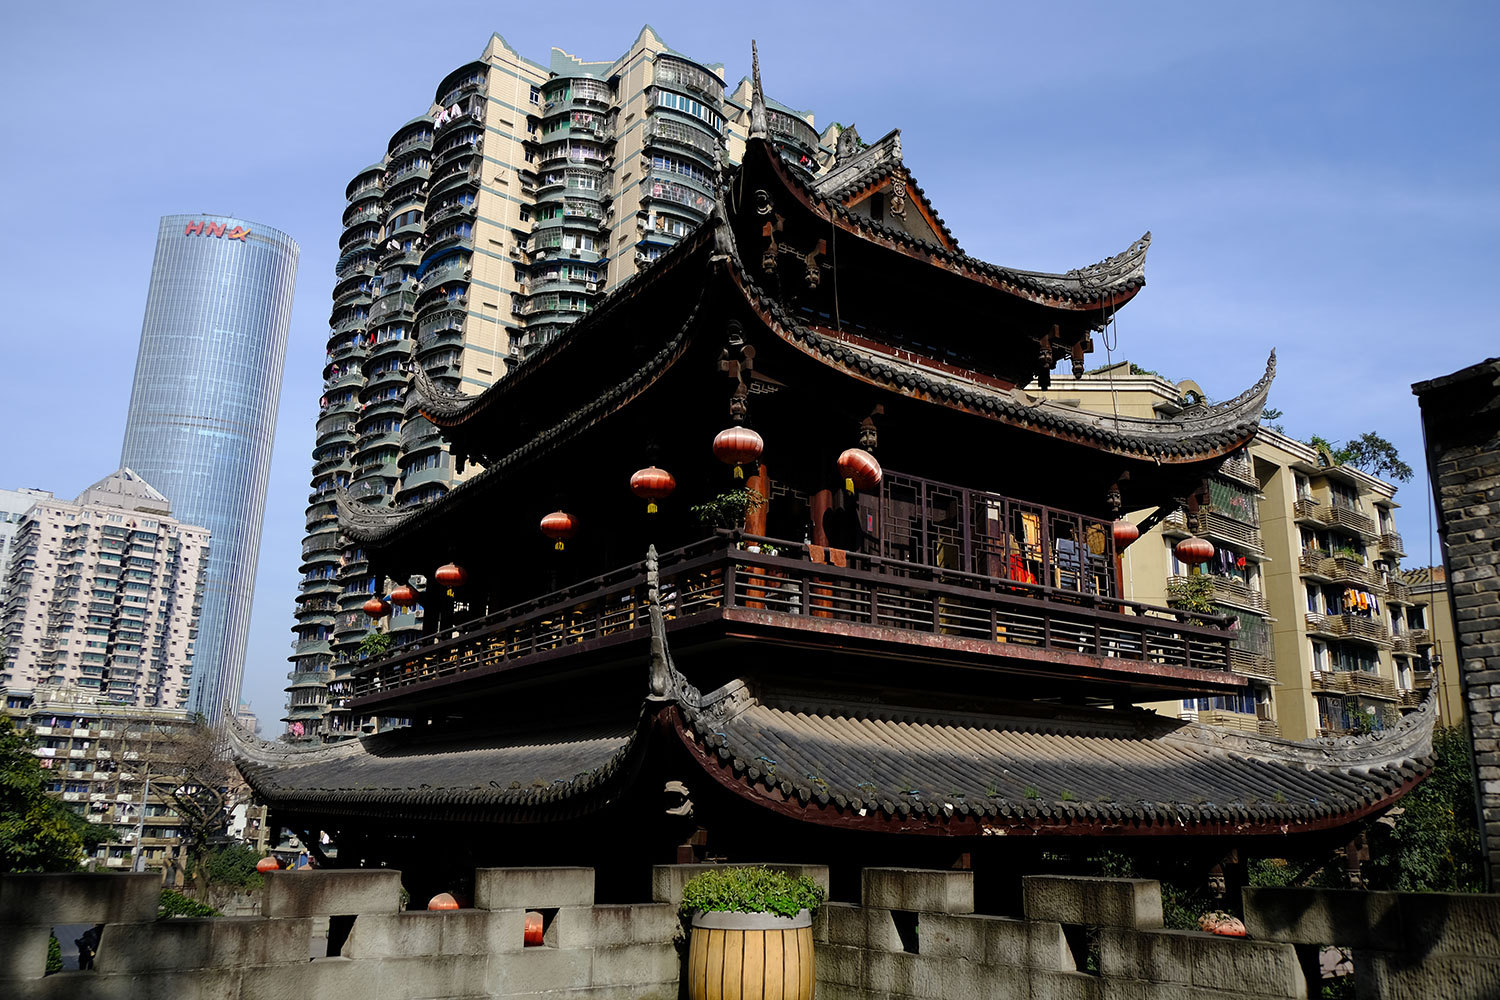 原创 3种重庆民居建筑,不同阶层之间差异明显,但吊脚楼却贯穿始终